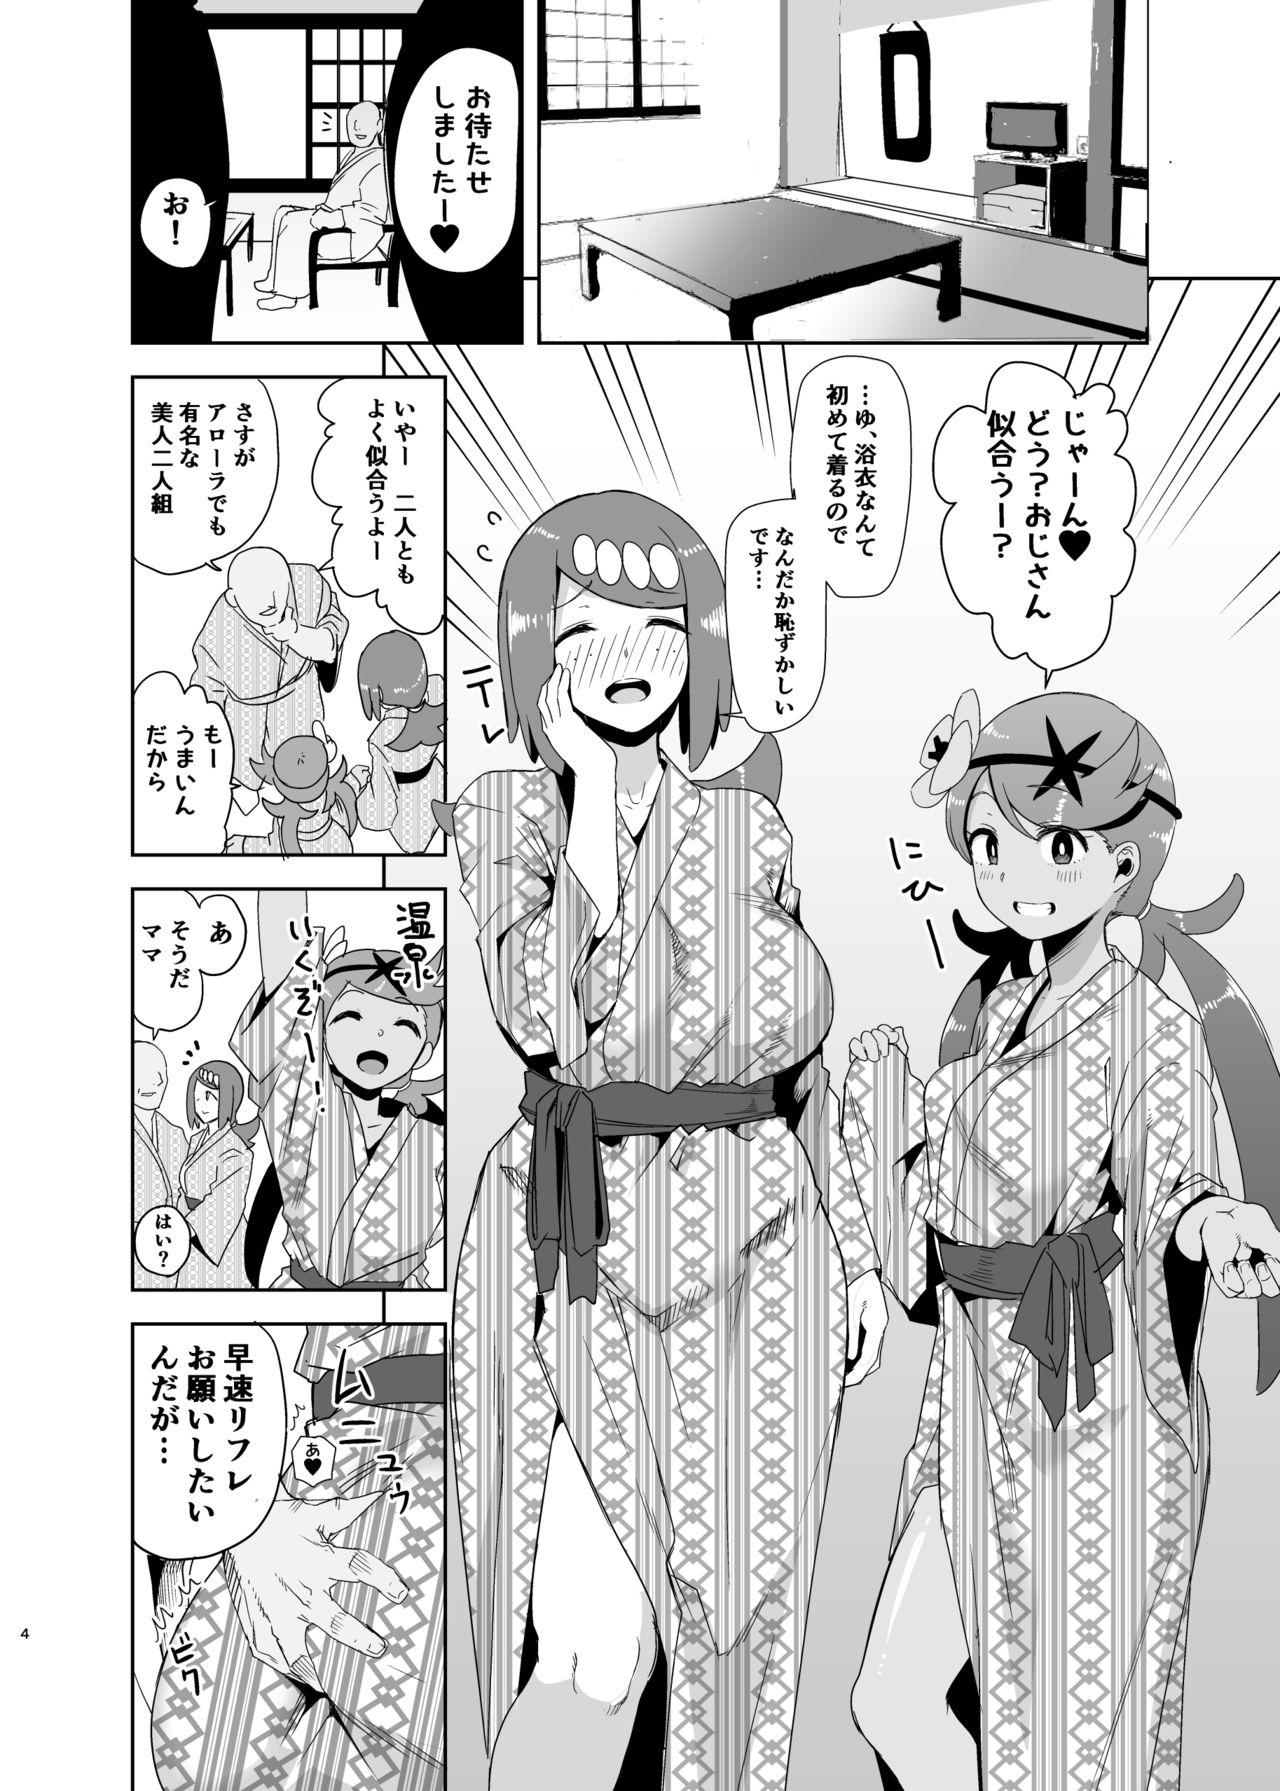 Mmf Alola no Yoru no Sugata 2 - Pokemon Enema - Page 3